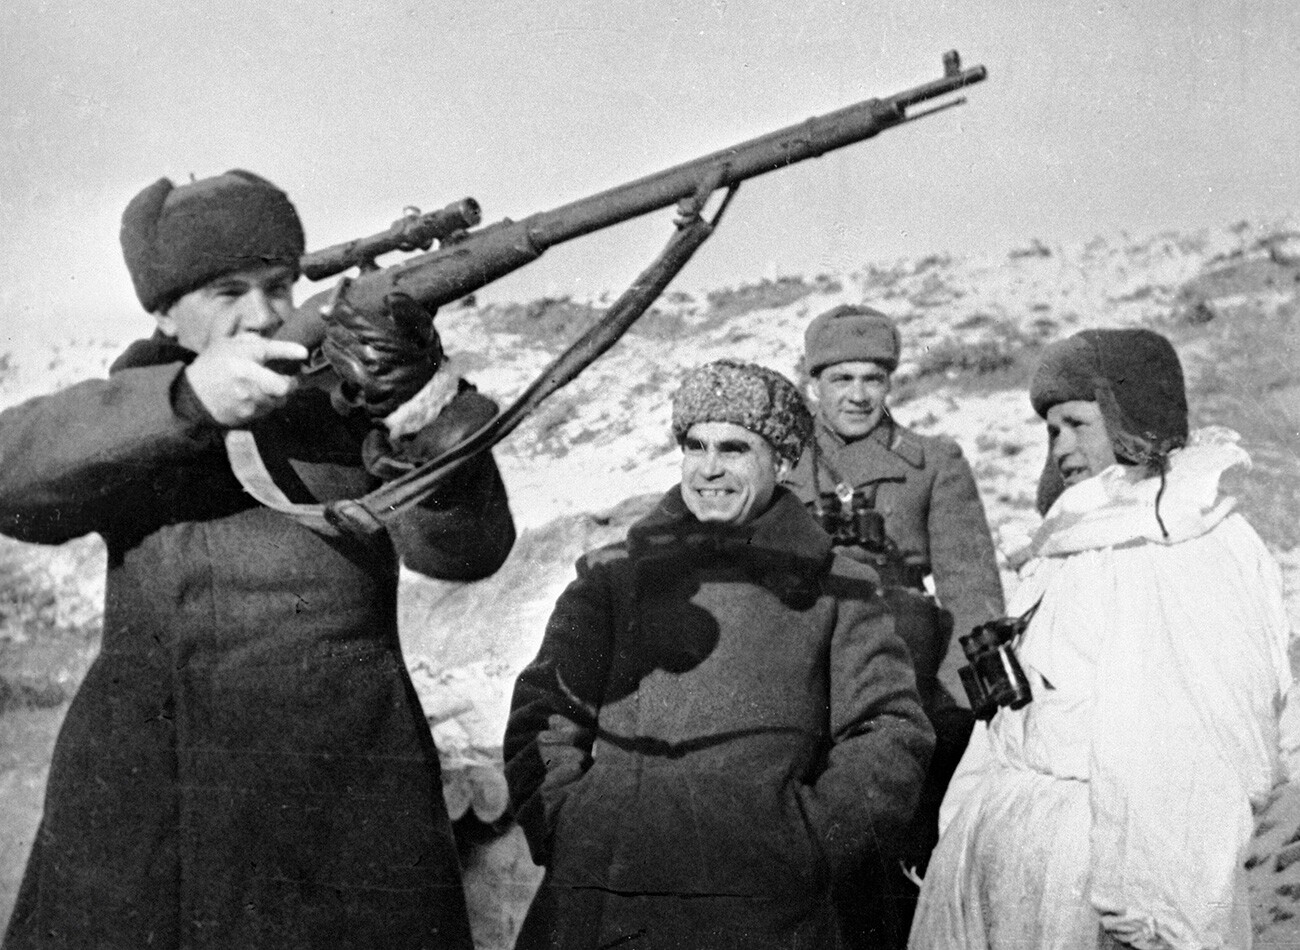 Vasily Chuikov examines the weapon of sniper Vasily Zaitsev.